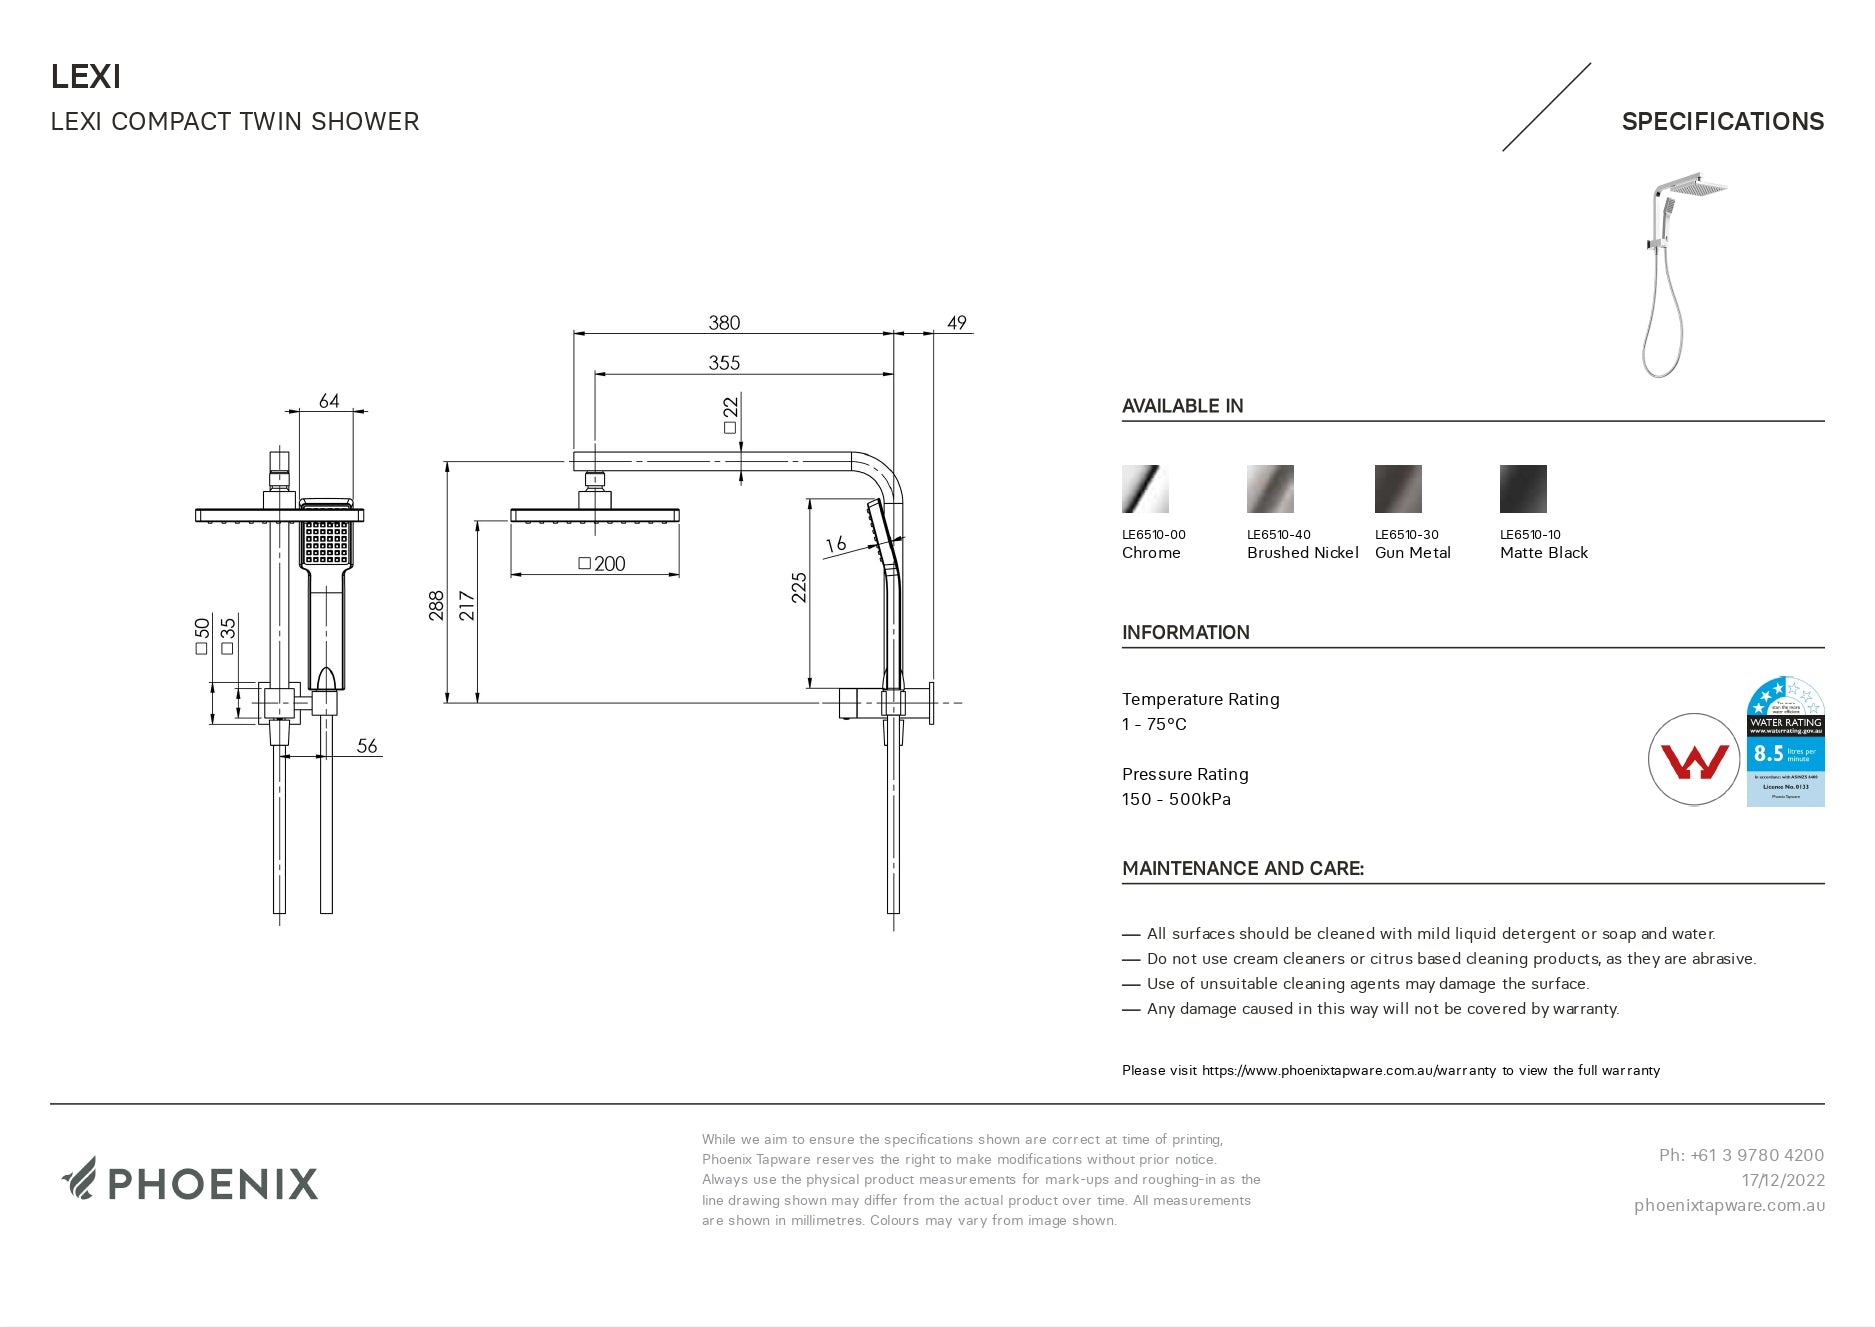 PHOENIX LEXI COMPACT TWIN SHOWER GUN METAL